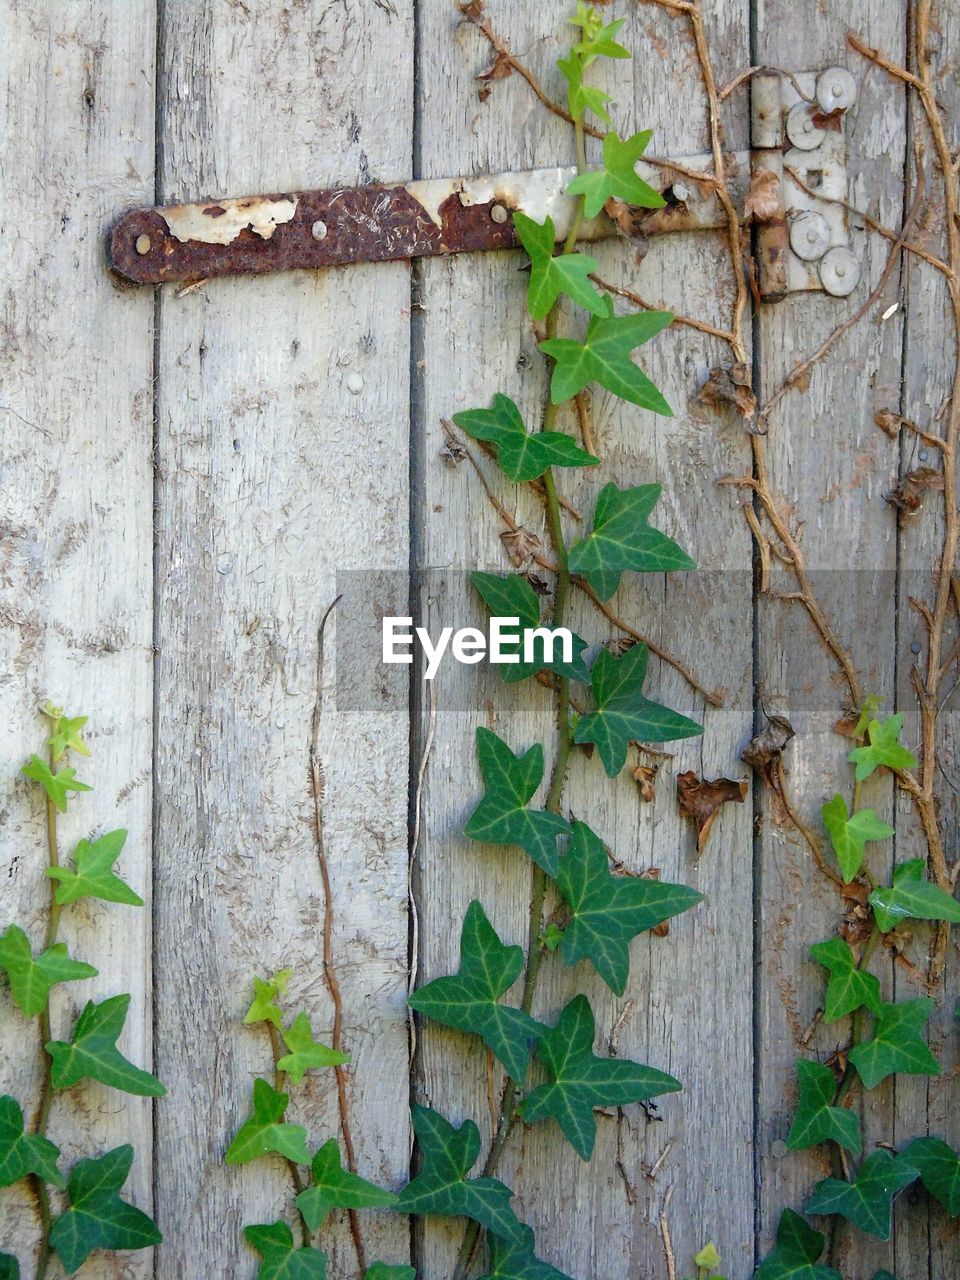 Ivy growing on wooden door